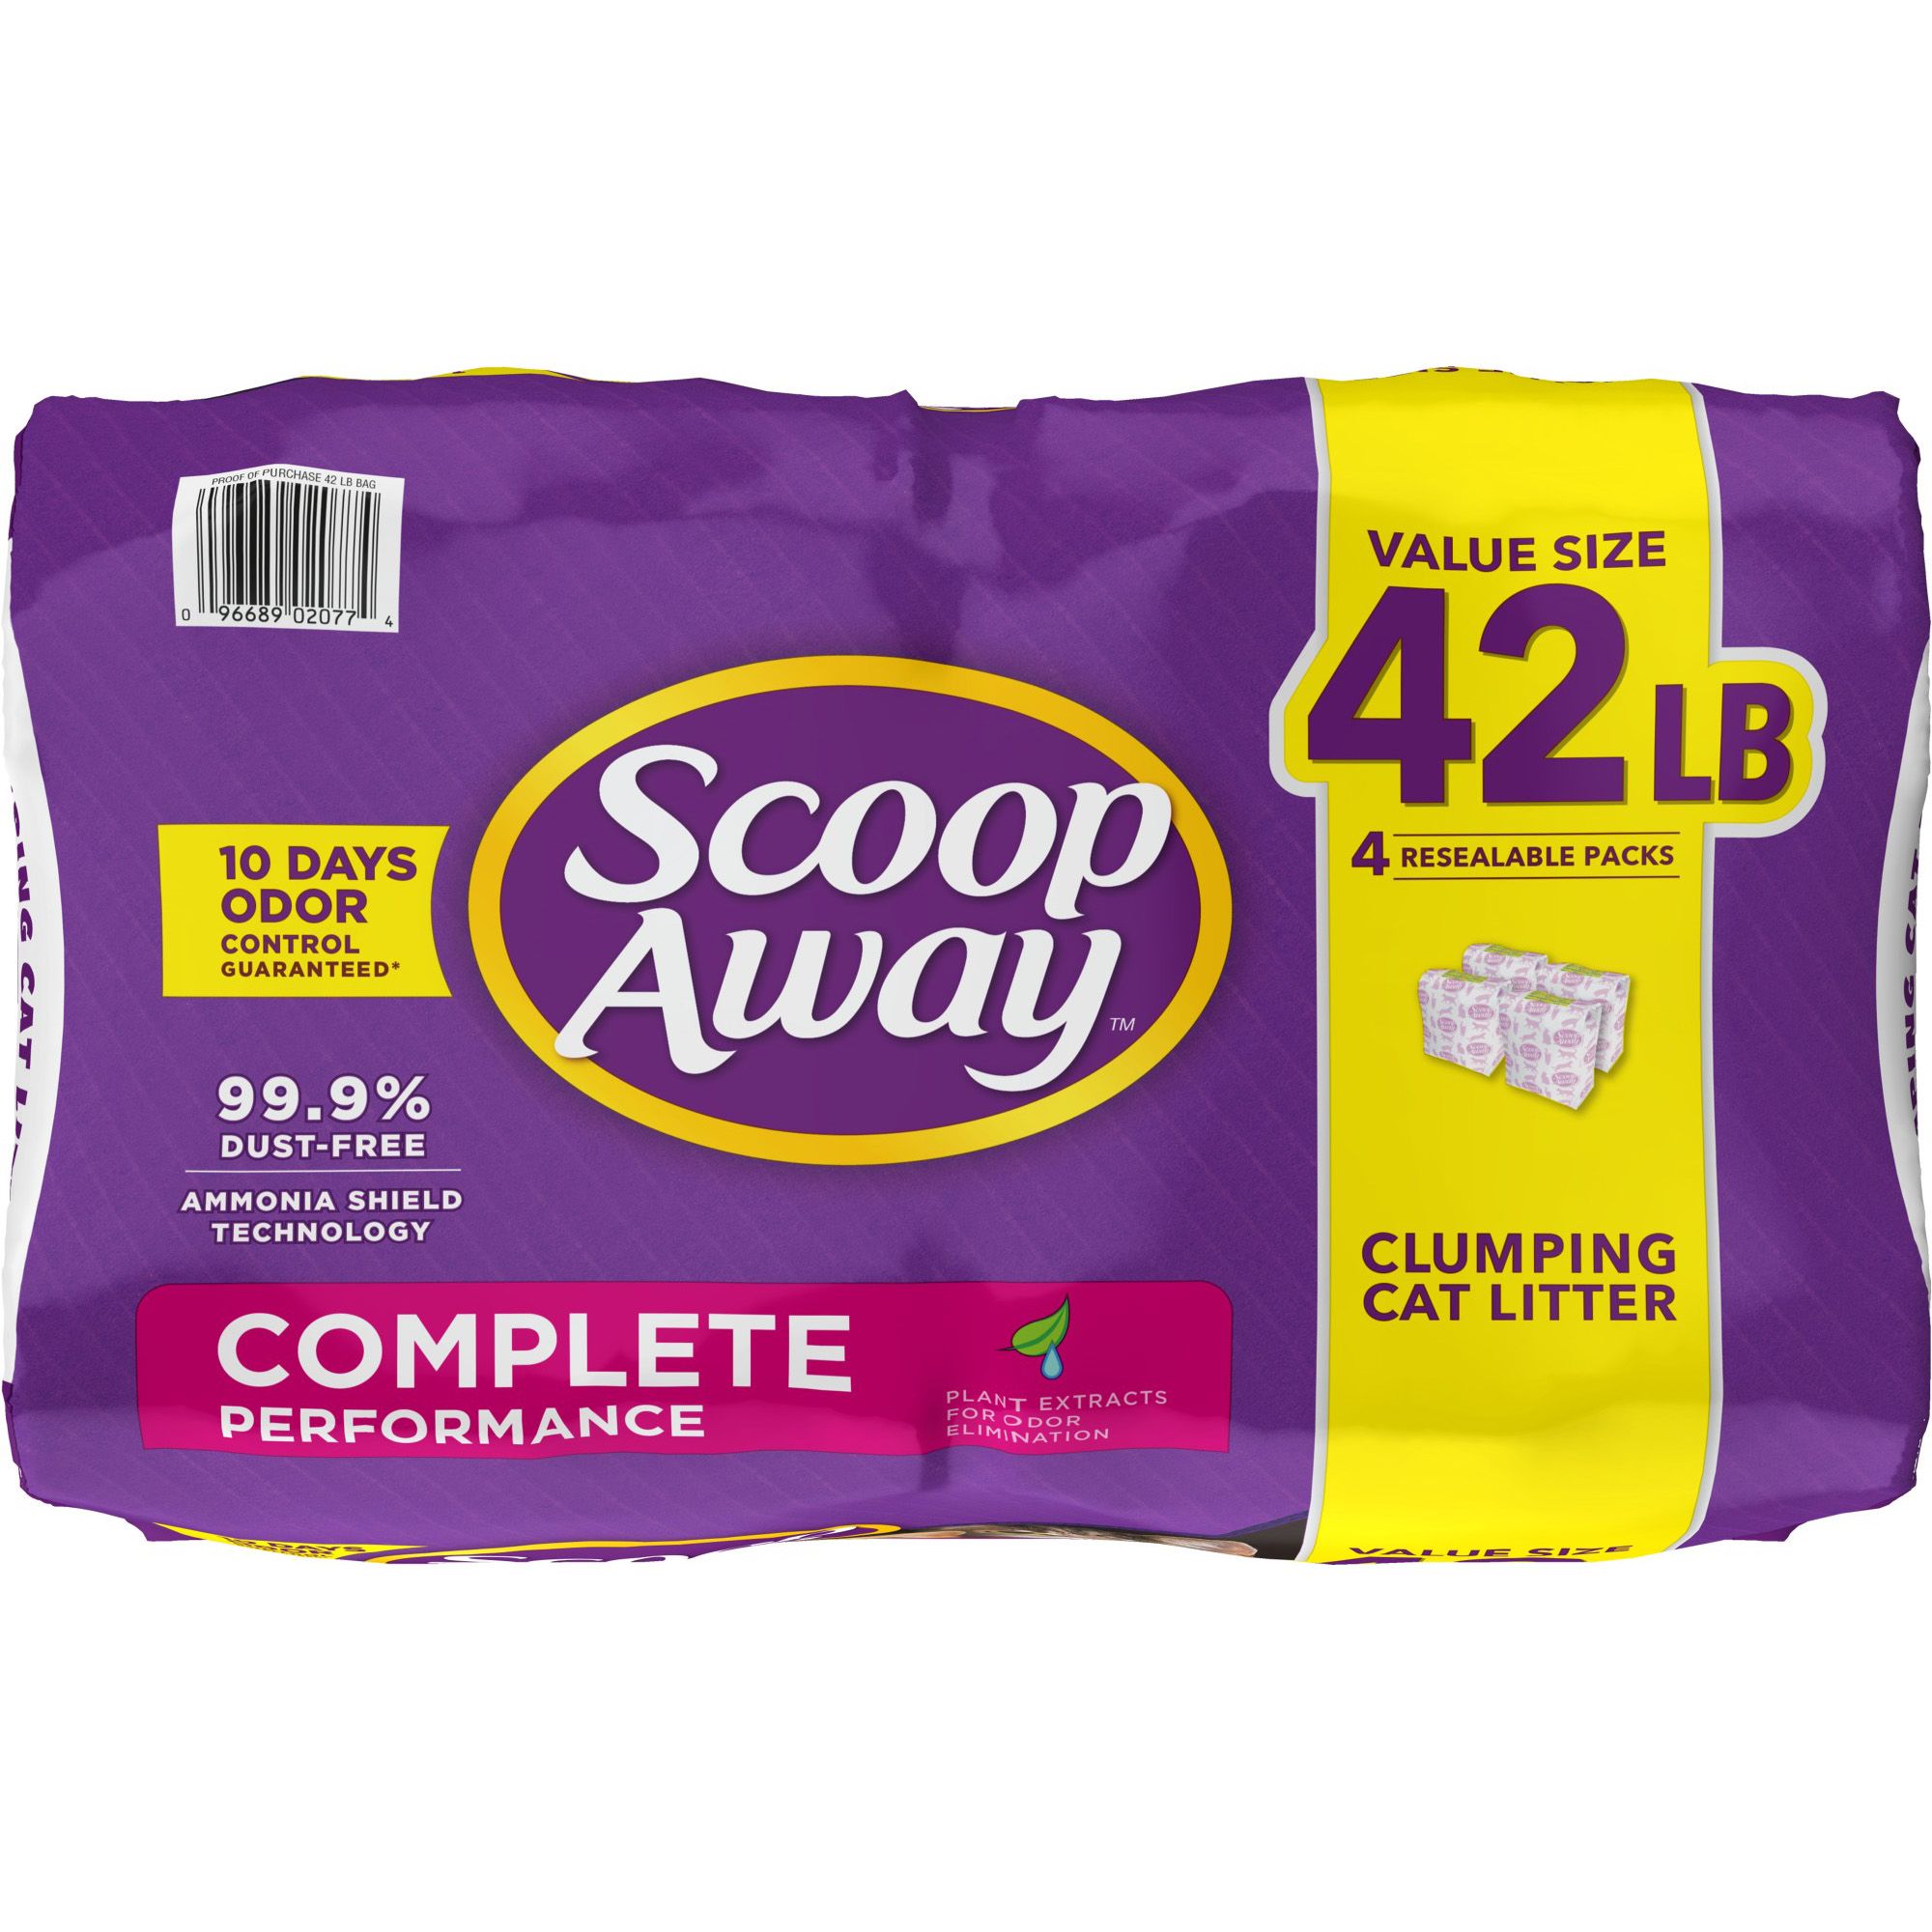 scoop away 42 lb